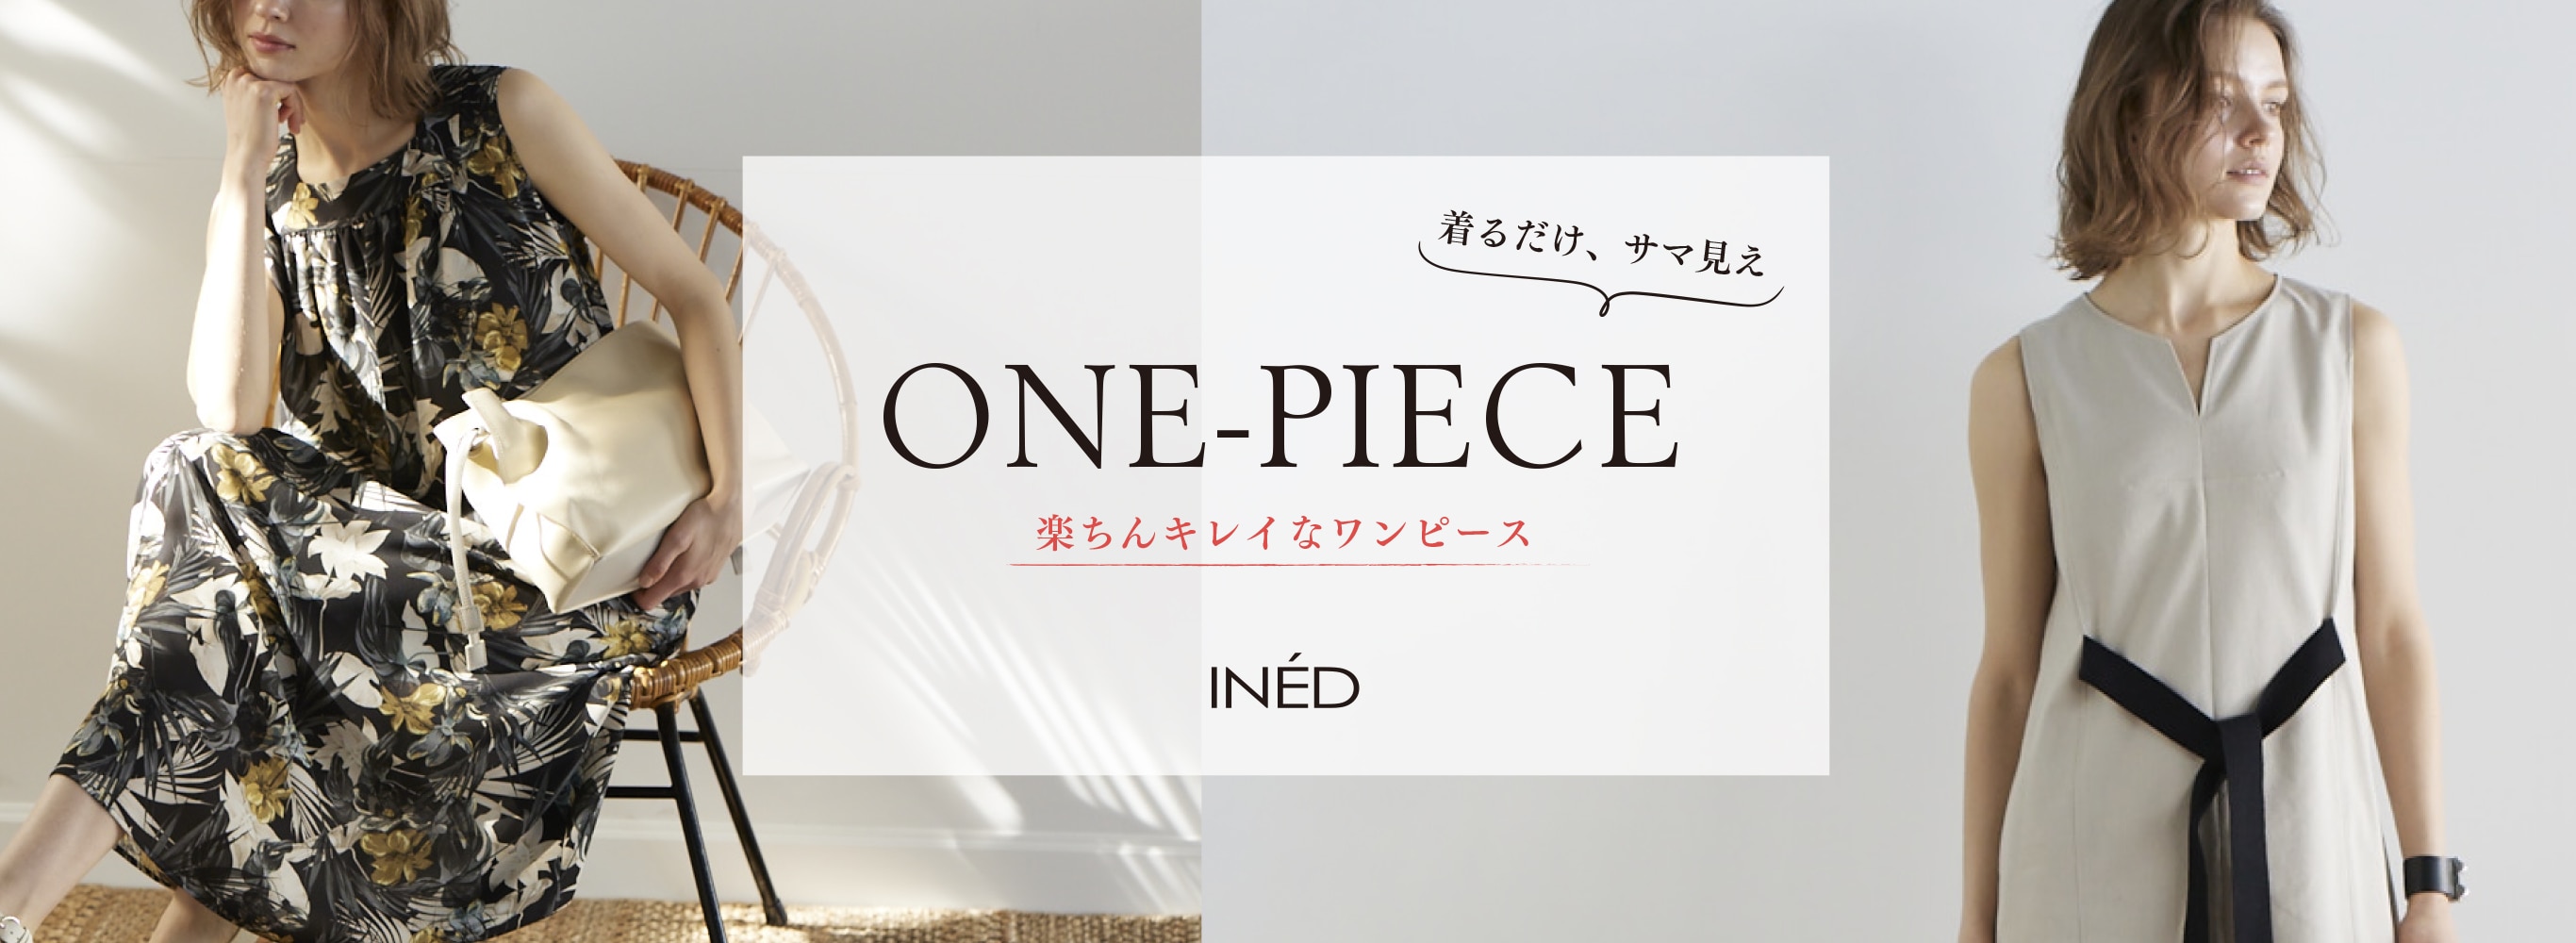 Ined One Piece ワンピース フランドル Flandre オンライン